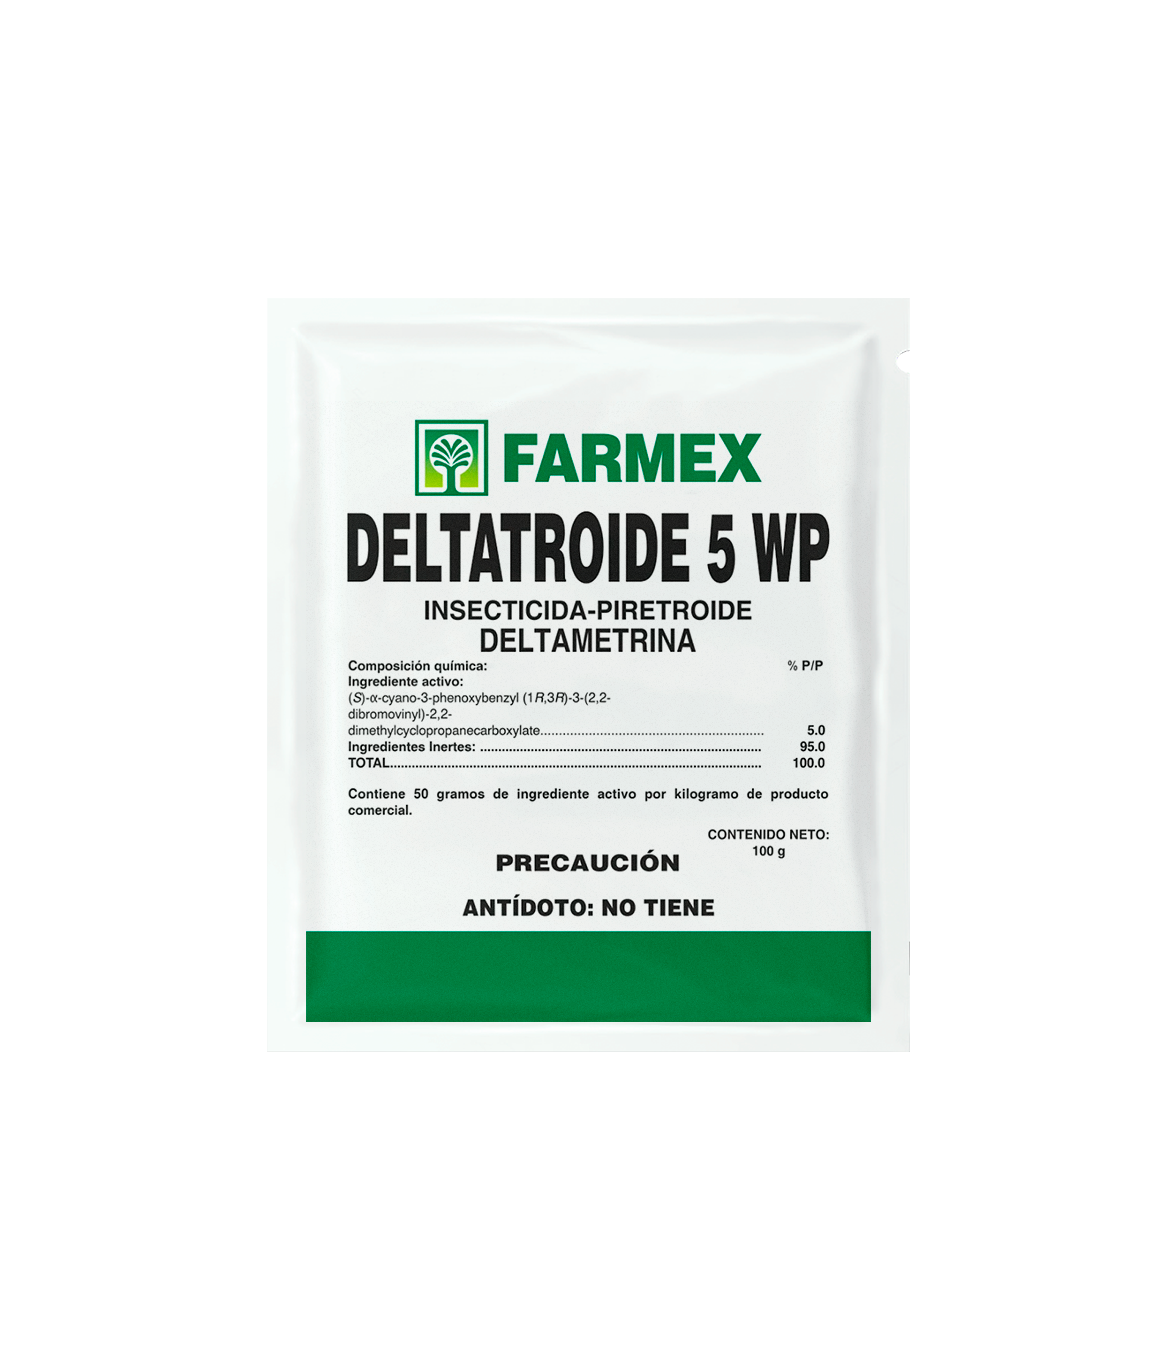 Deltatroide 5 WP